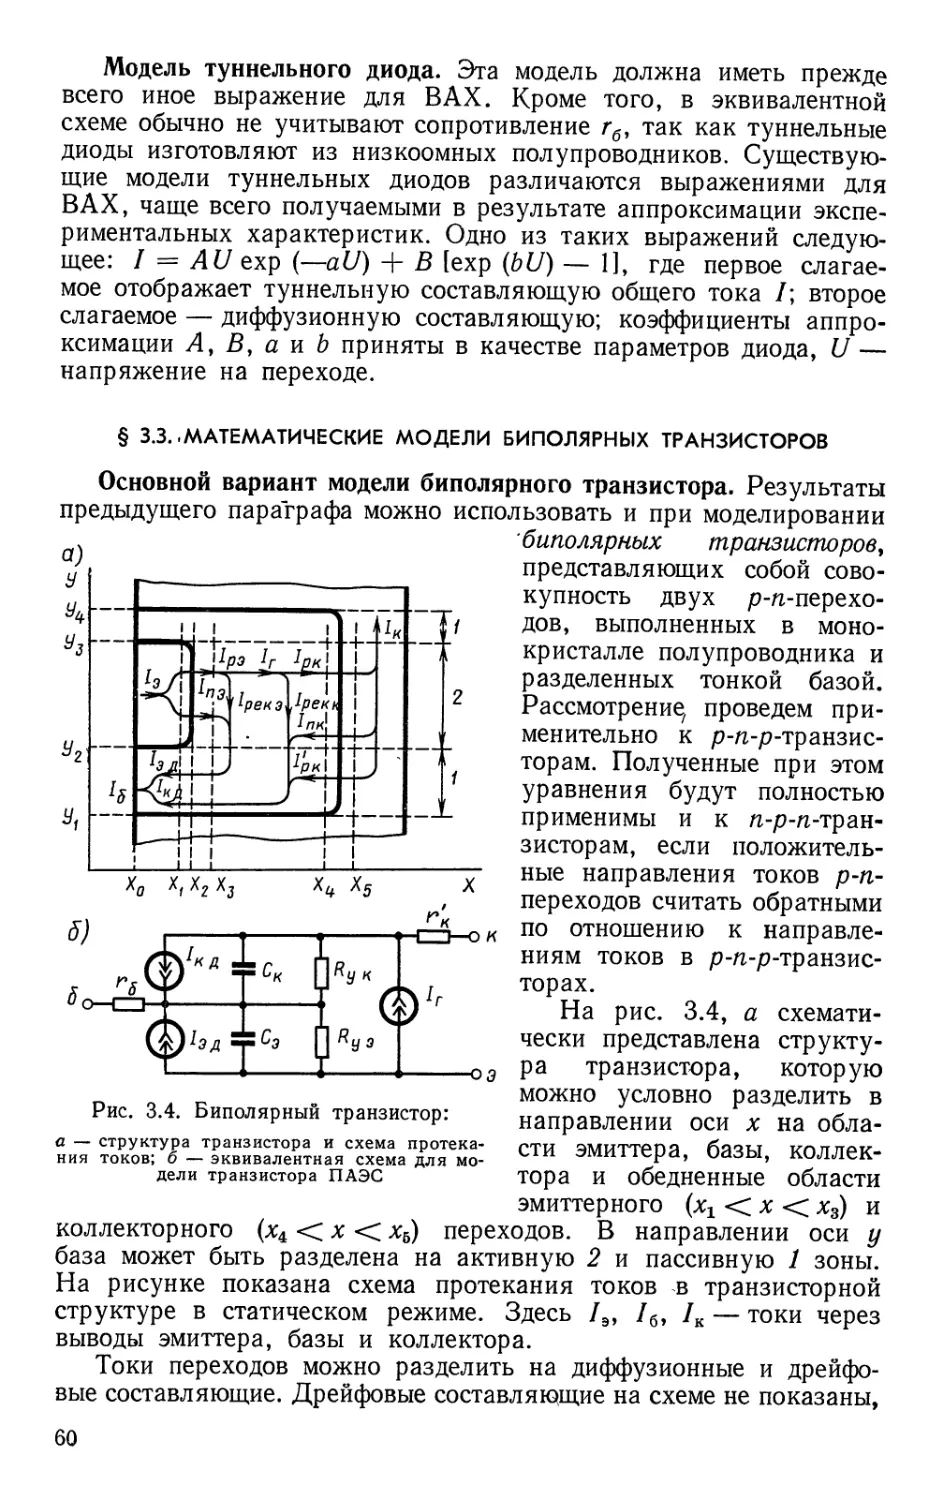 §3.3. Математические модели биполярных транзисторов